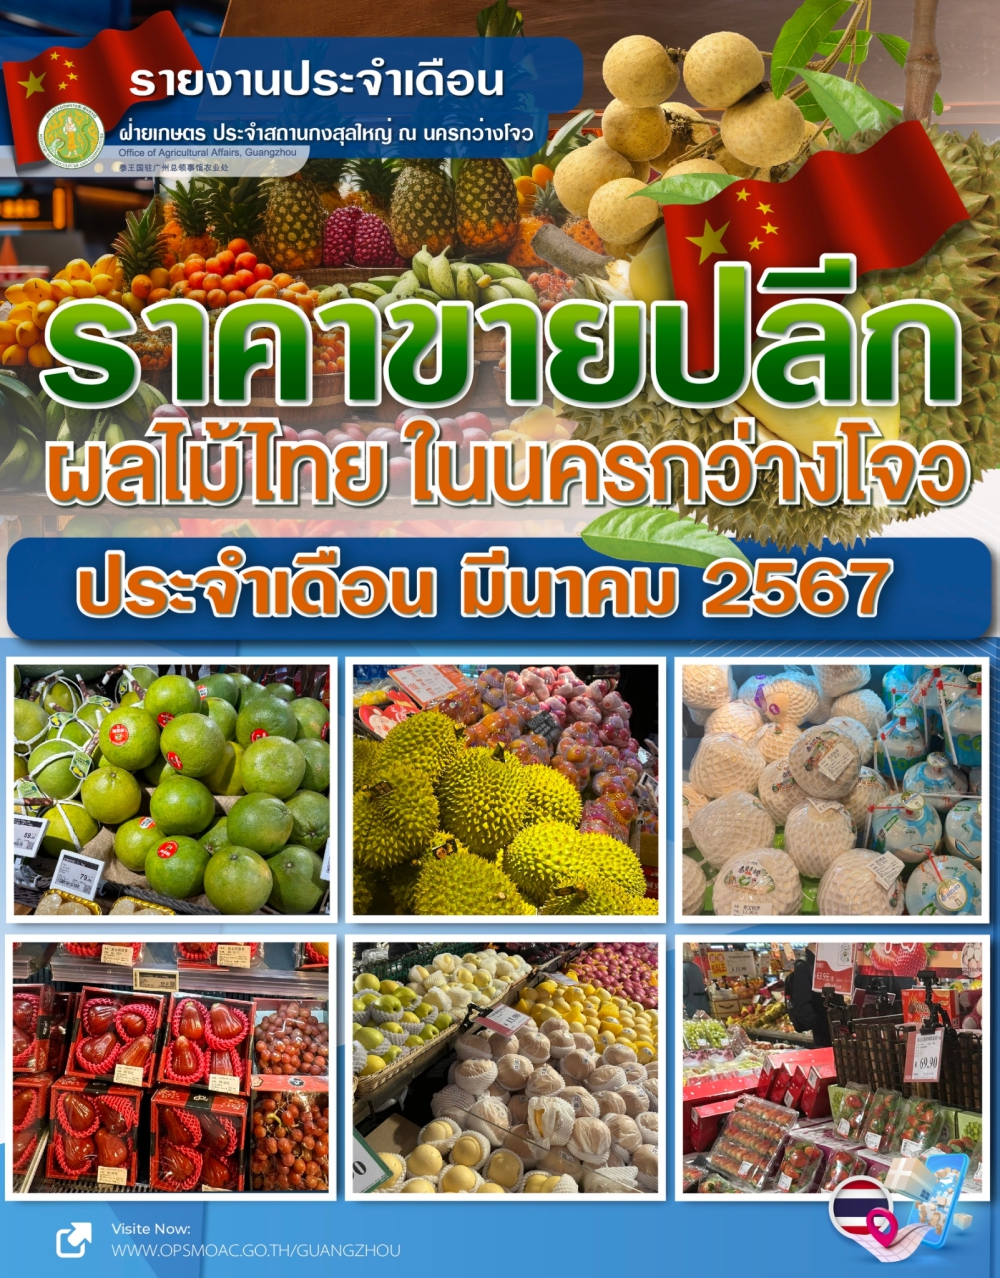 ราคาขายปลีกผลไม้ไทยในนครกว่างโจว ประจำเดือนมีนาคม 2567